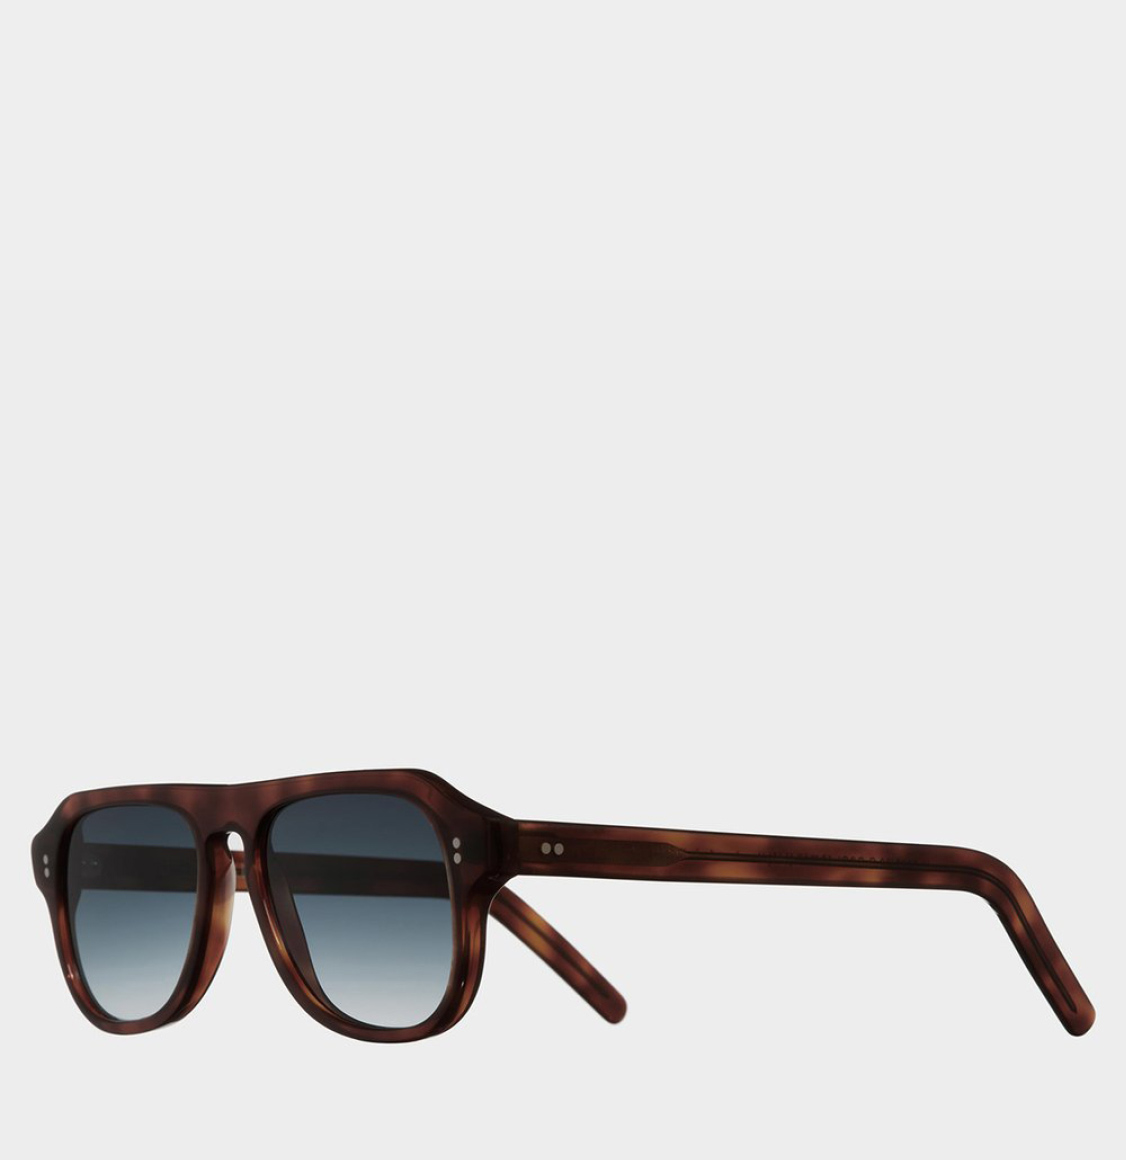 Cutler and Gross Aviator Sunglasses 0822V2-GRCL Dark Tortoiseshell Γυαλιά Ηλίου